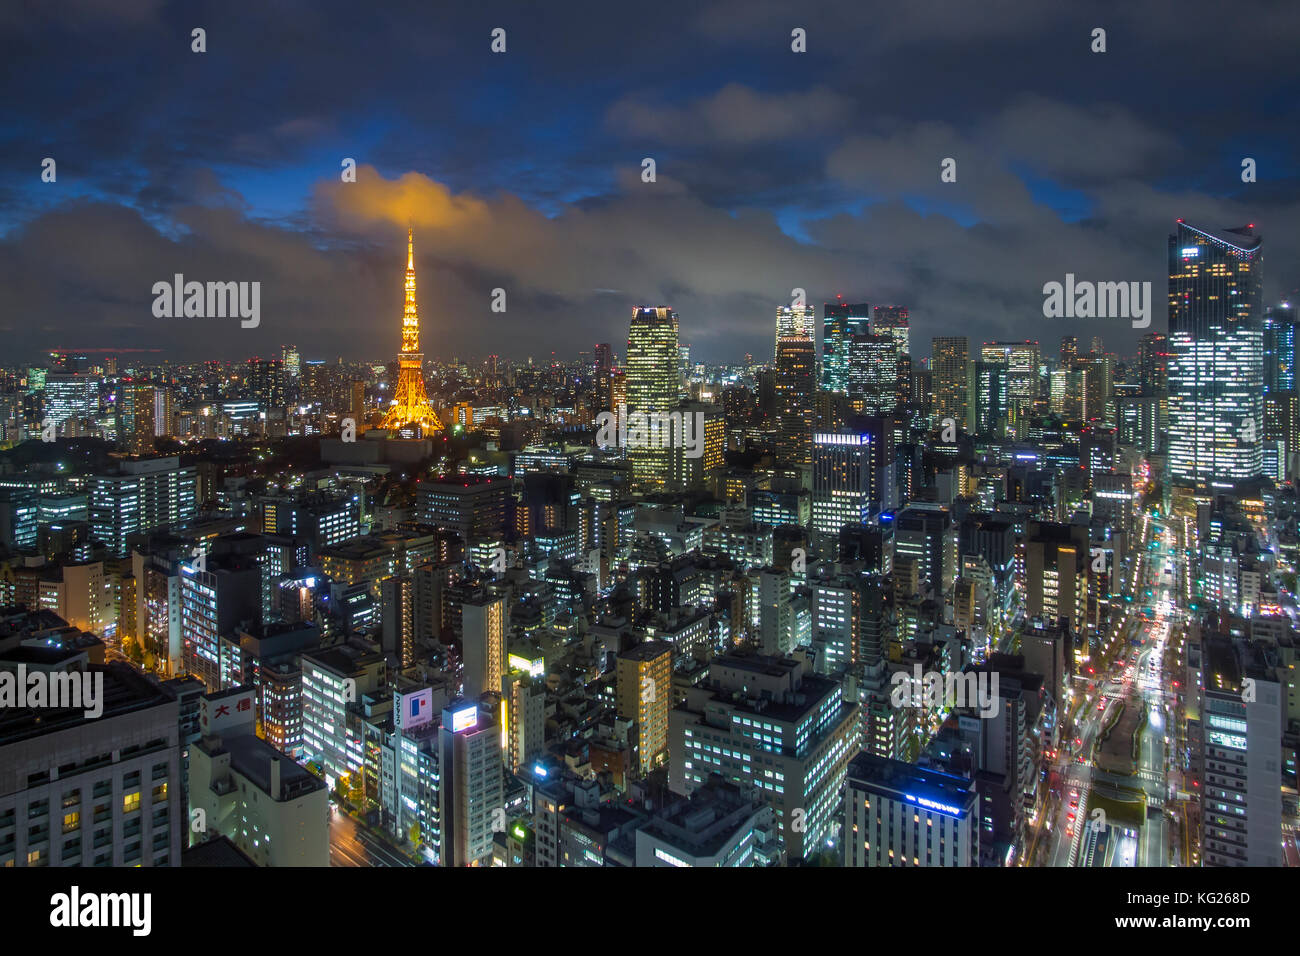 Erhöhter Blick auf die Skyline der Stadt und den berühmten beleuchteten Tokyo Tower, Tokio, Japan, Asien Stockfoto